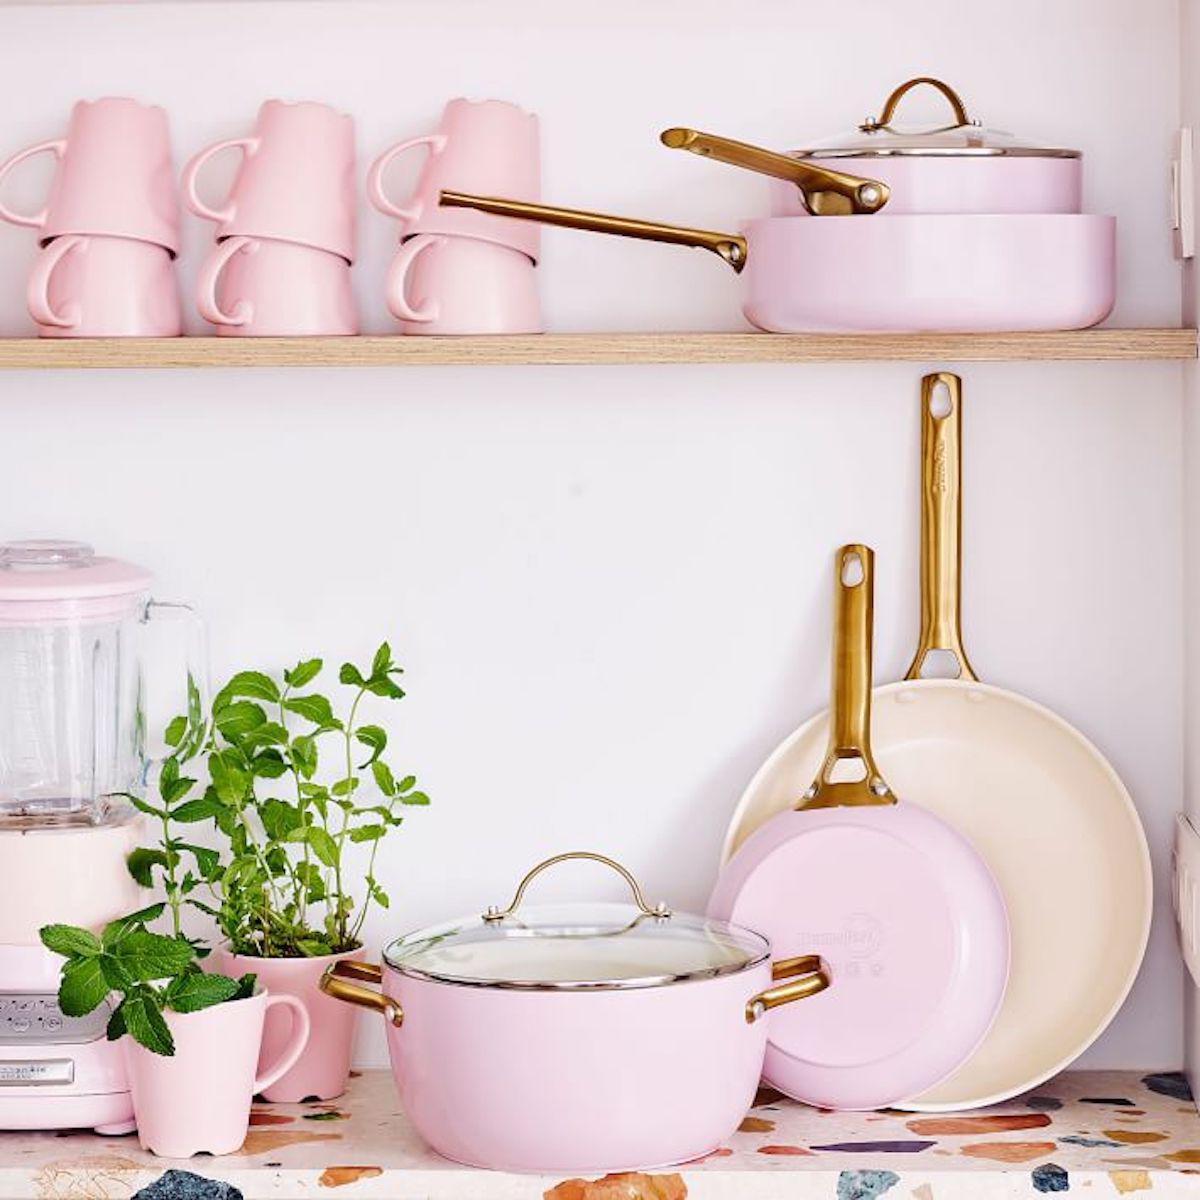 Pioneer Woman Cookware Set Review : Porcelain Enamel 10-Piece Set